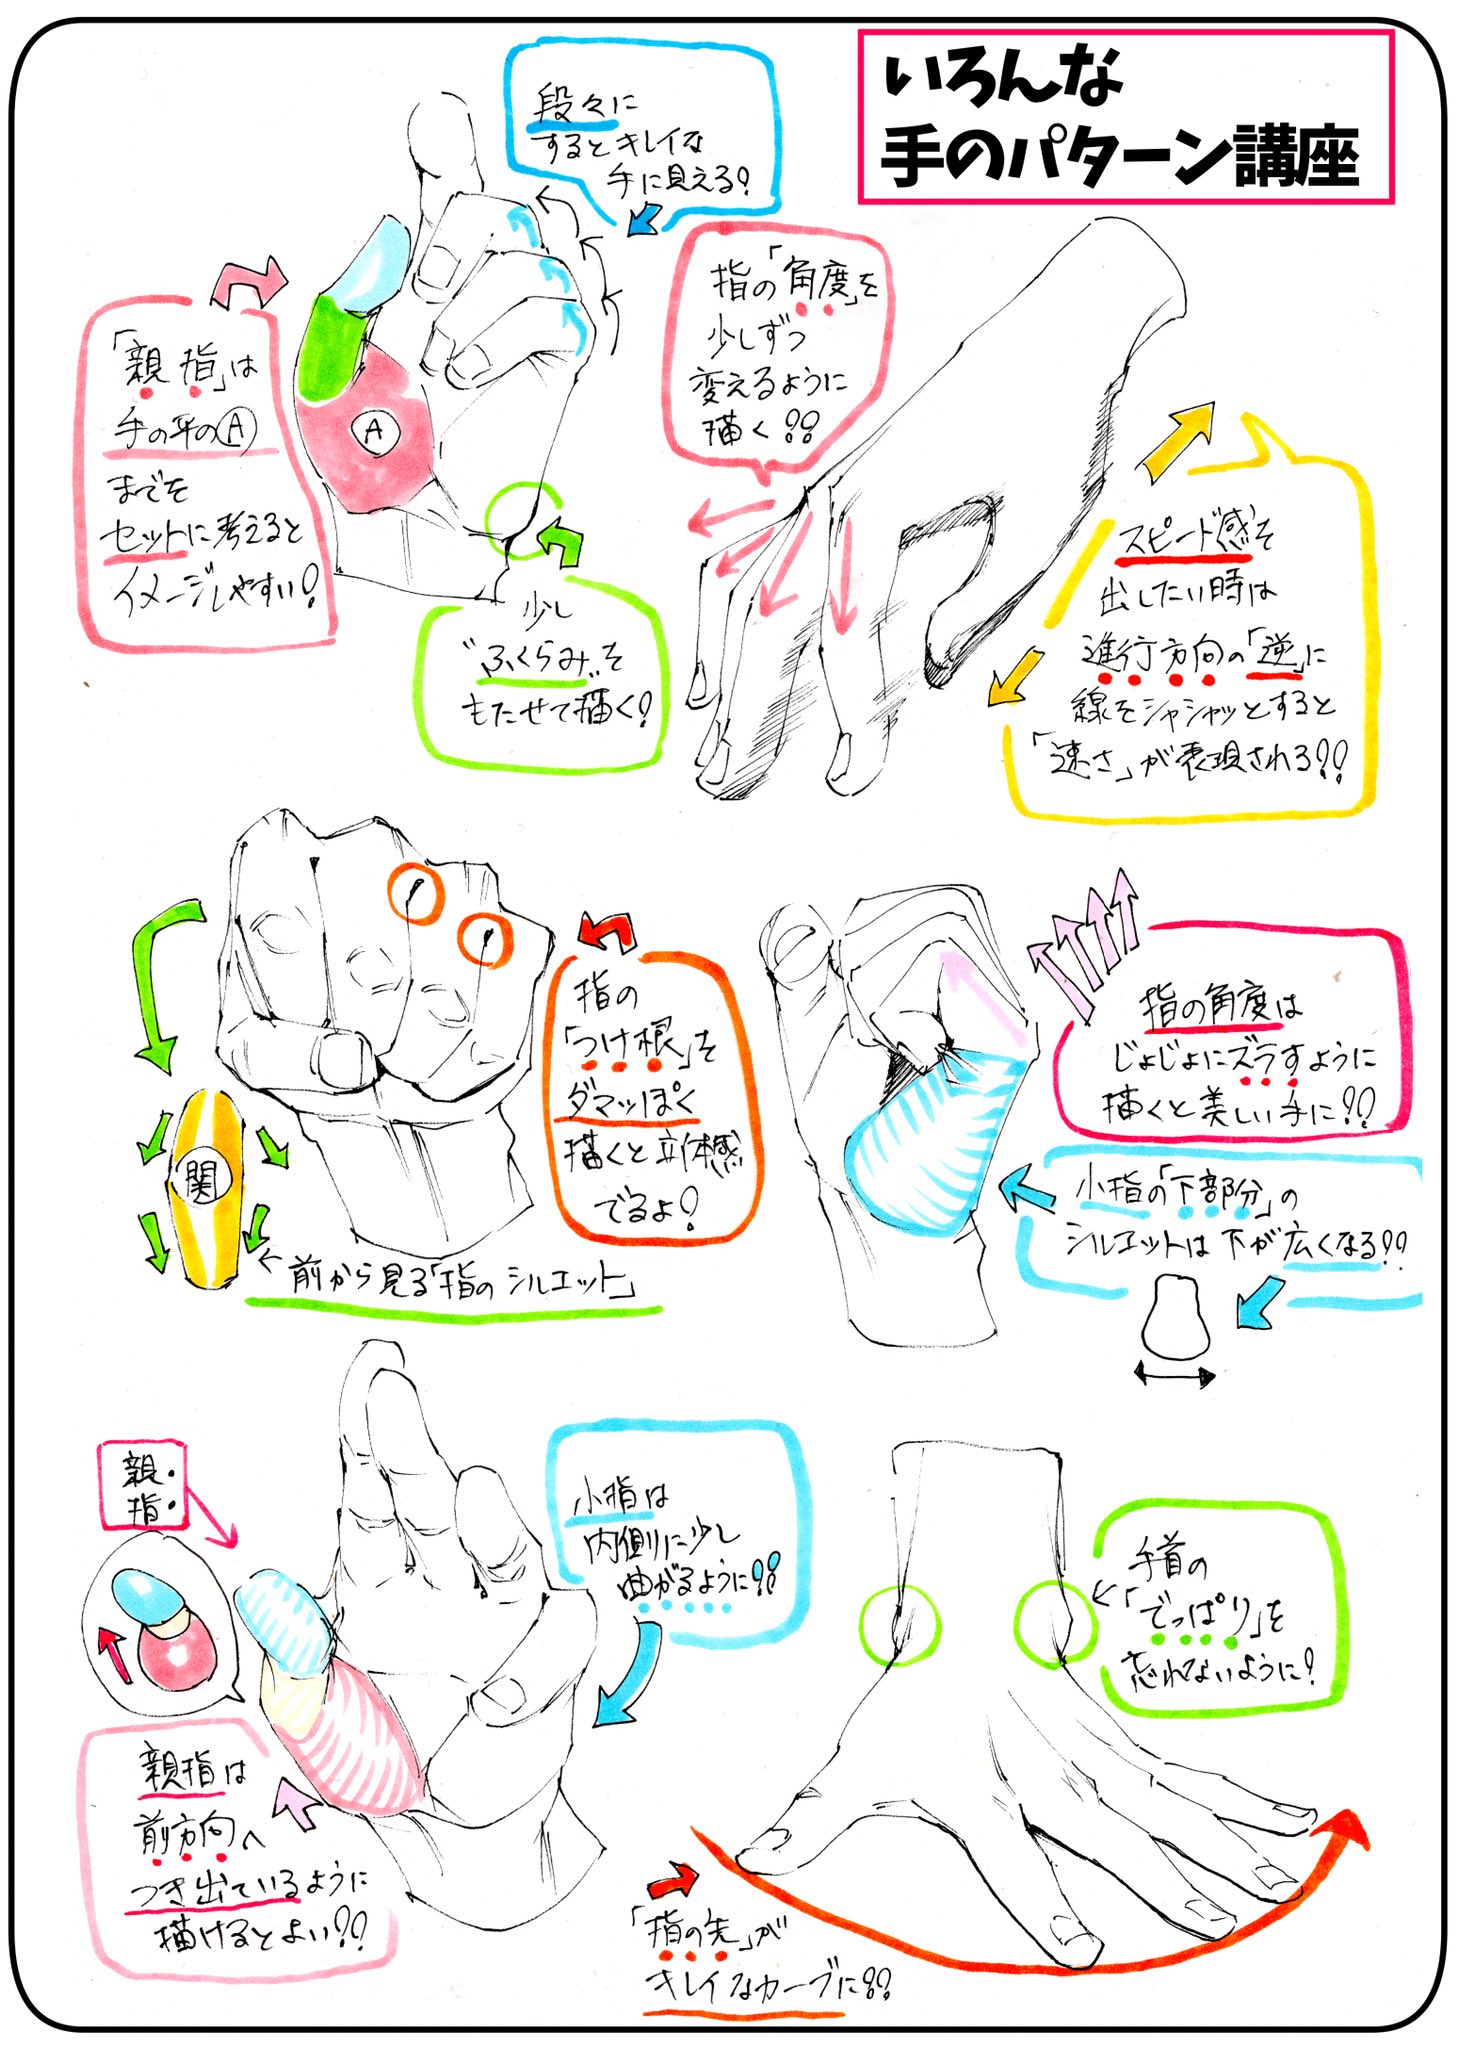 吉村拓也 イラスト講座 手の描き方 あらゆるアングルで描く手の構図 初心者でも分かる 4ページ講座 手の要点まとめ です